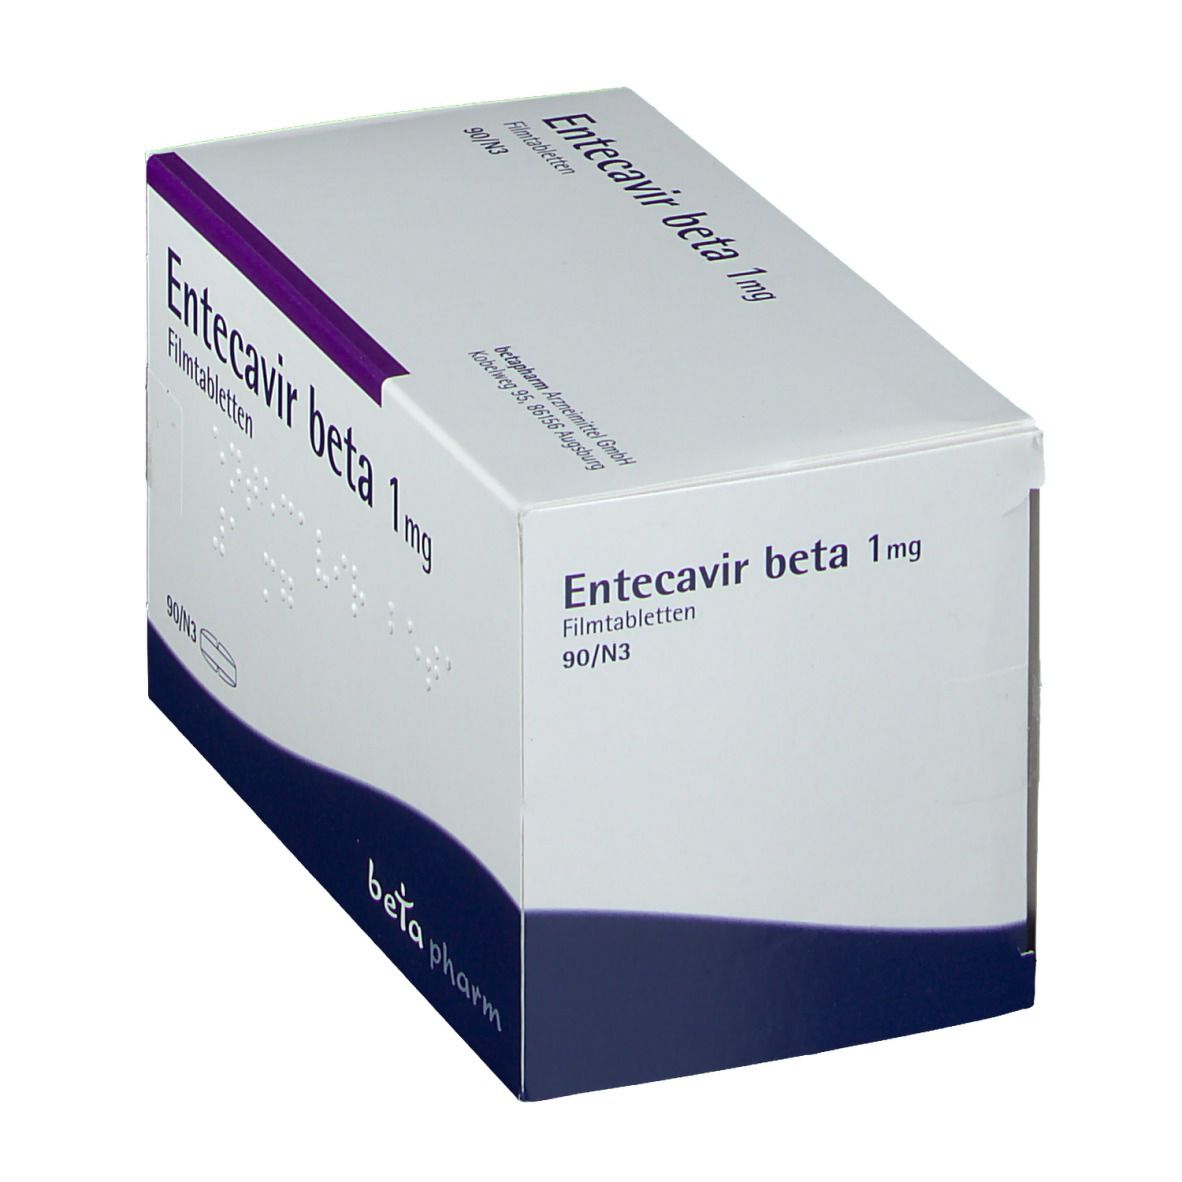 Entecavir beta 1 mg